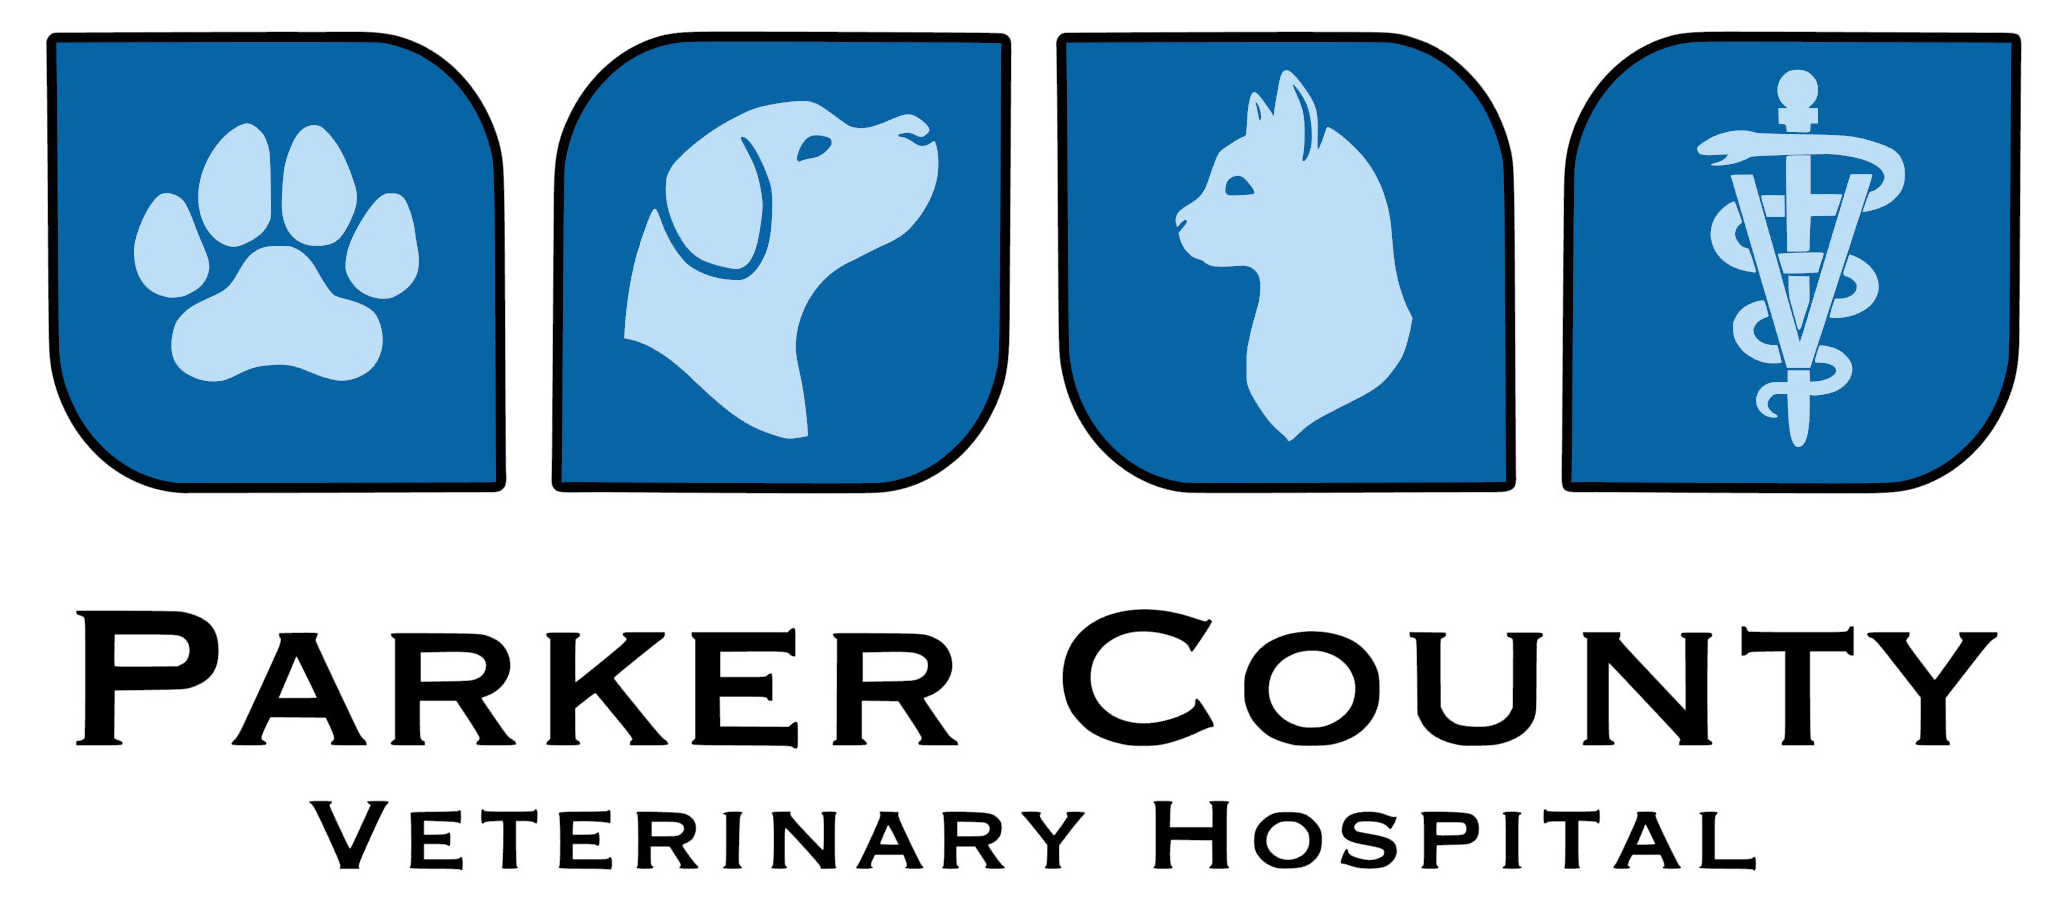 Parker County Vet Hospital